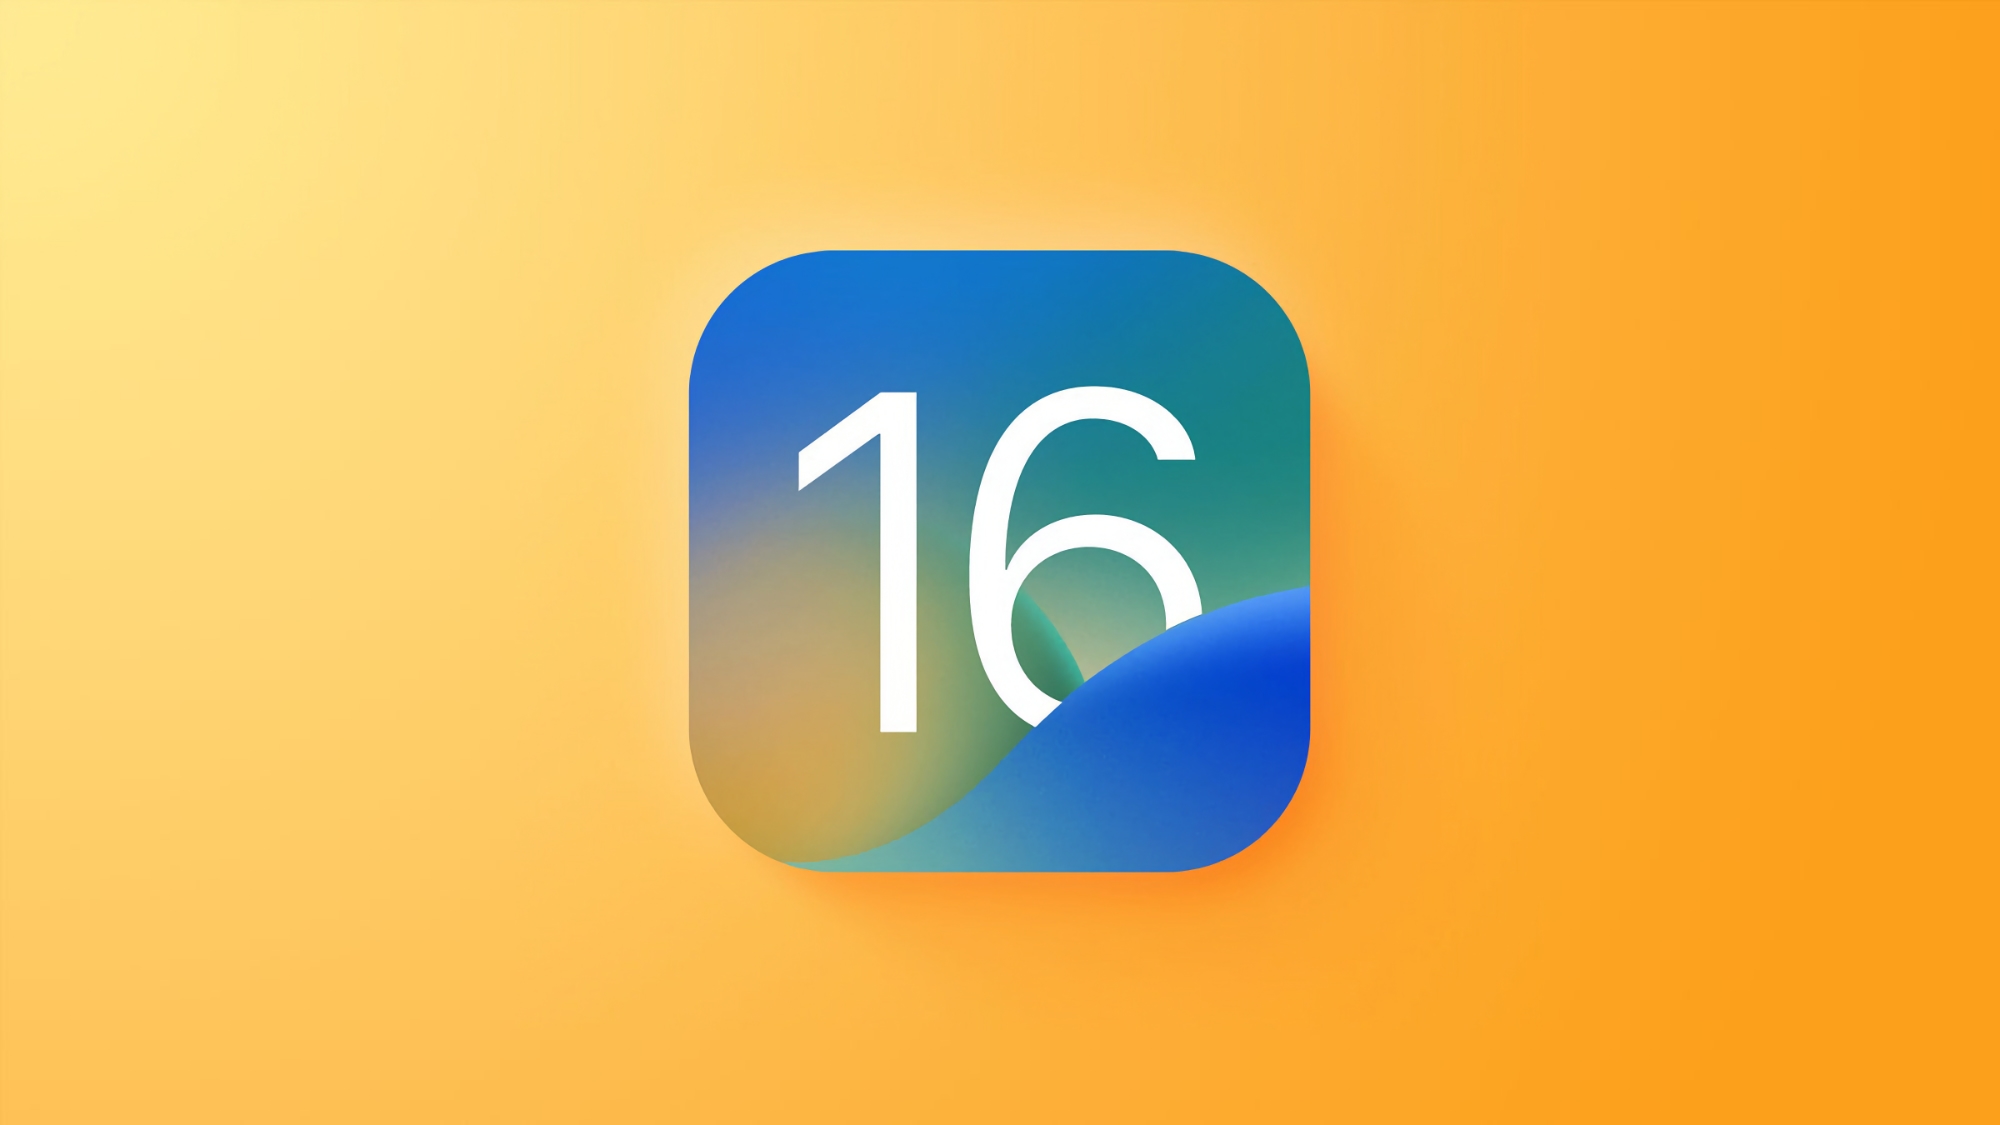 Inaspettatamente: Apple ha rilasciato iOS 16.5.1 agli utenti di iPhone